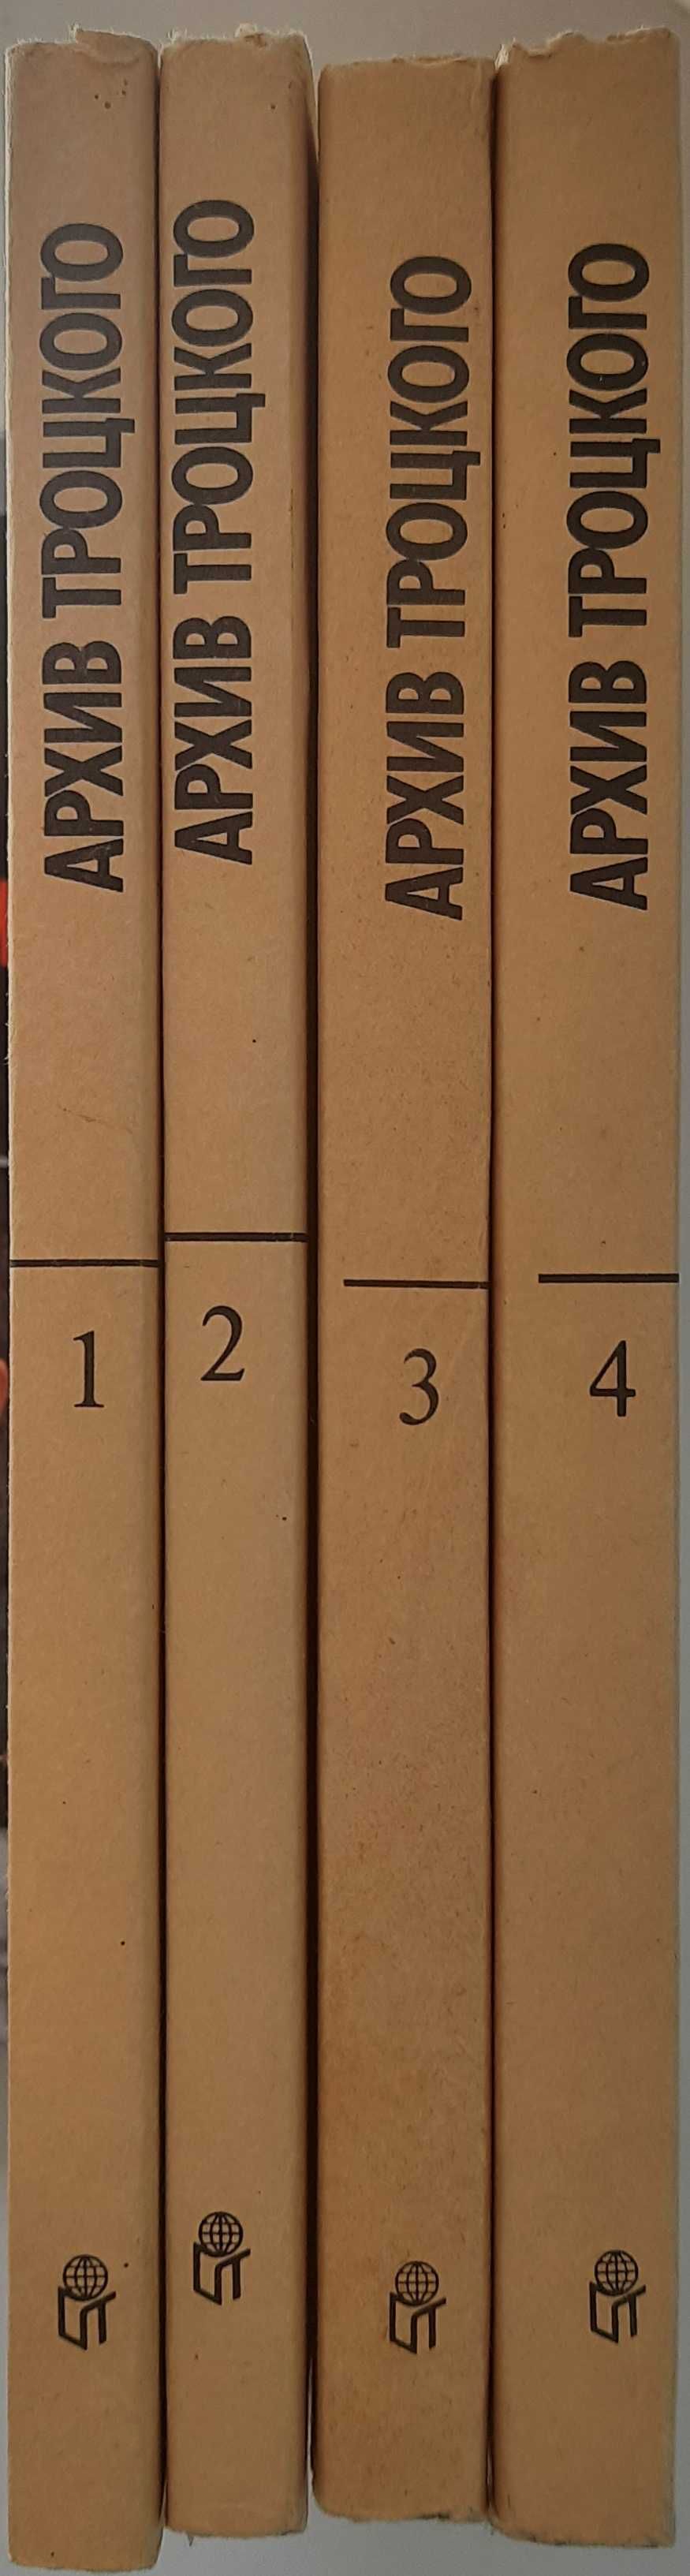 Архив Троцкого (комплект 4 тома)